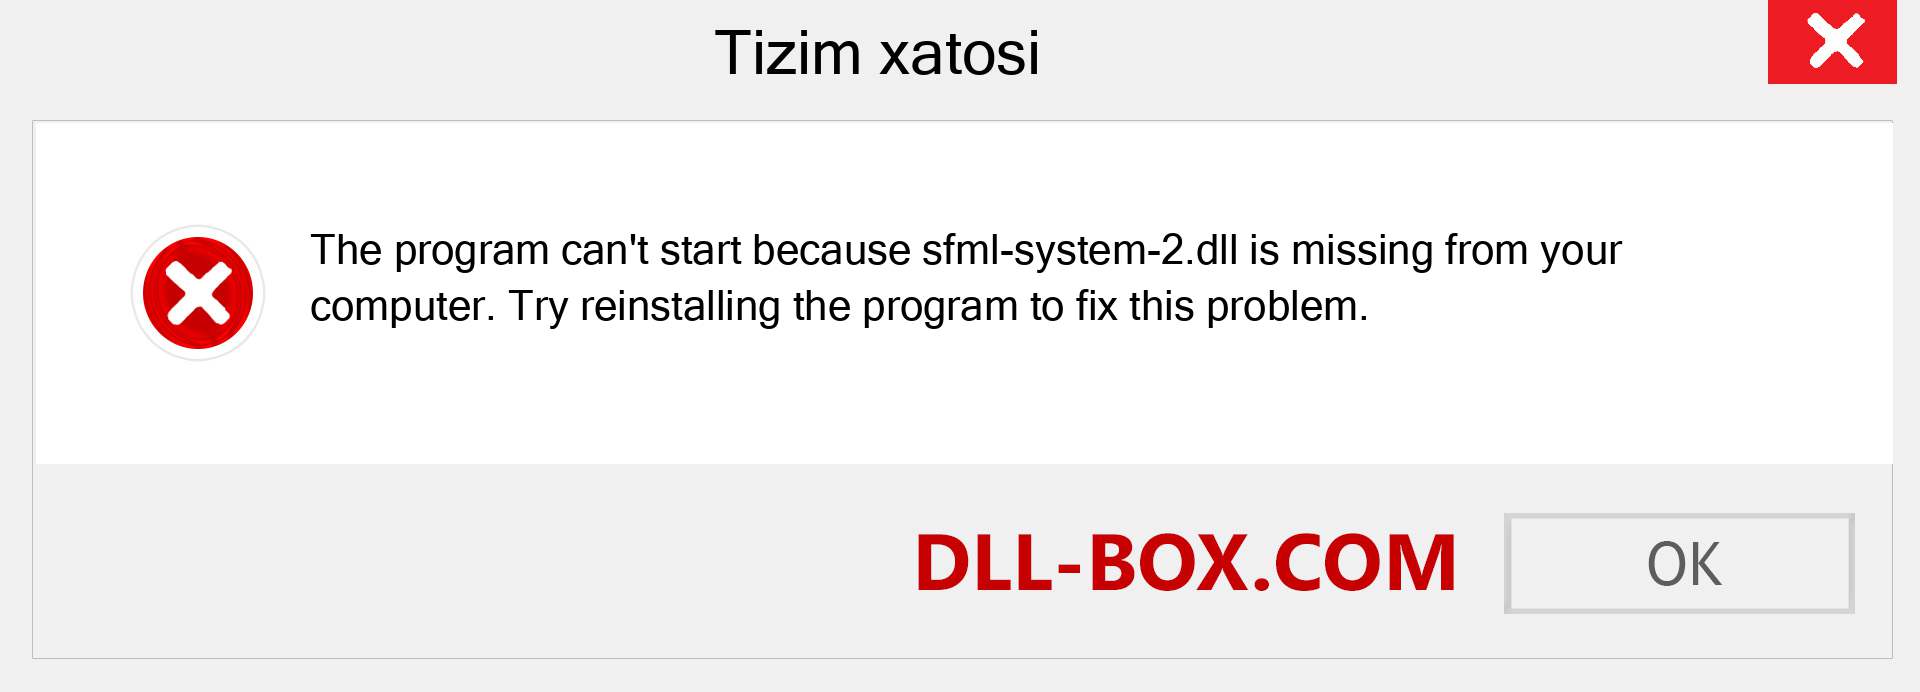 sfml-system-2.dll fayli yo'qolganmi?. Windows 7, 8, 10 uchun yuklab olish - Windowsda sfml-system-2 dll etishmayotgan xatoni tuzating, rasmlar, rasmlar